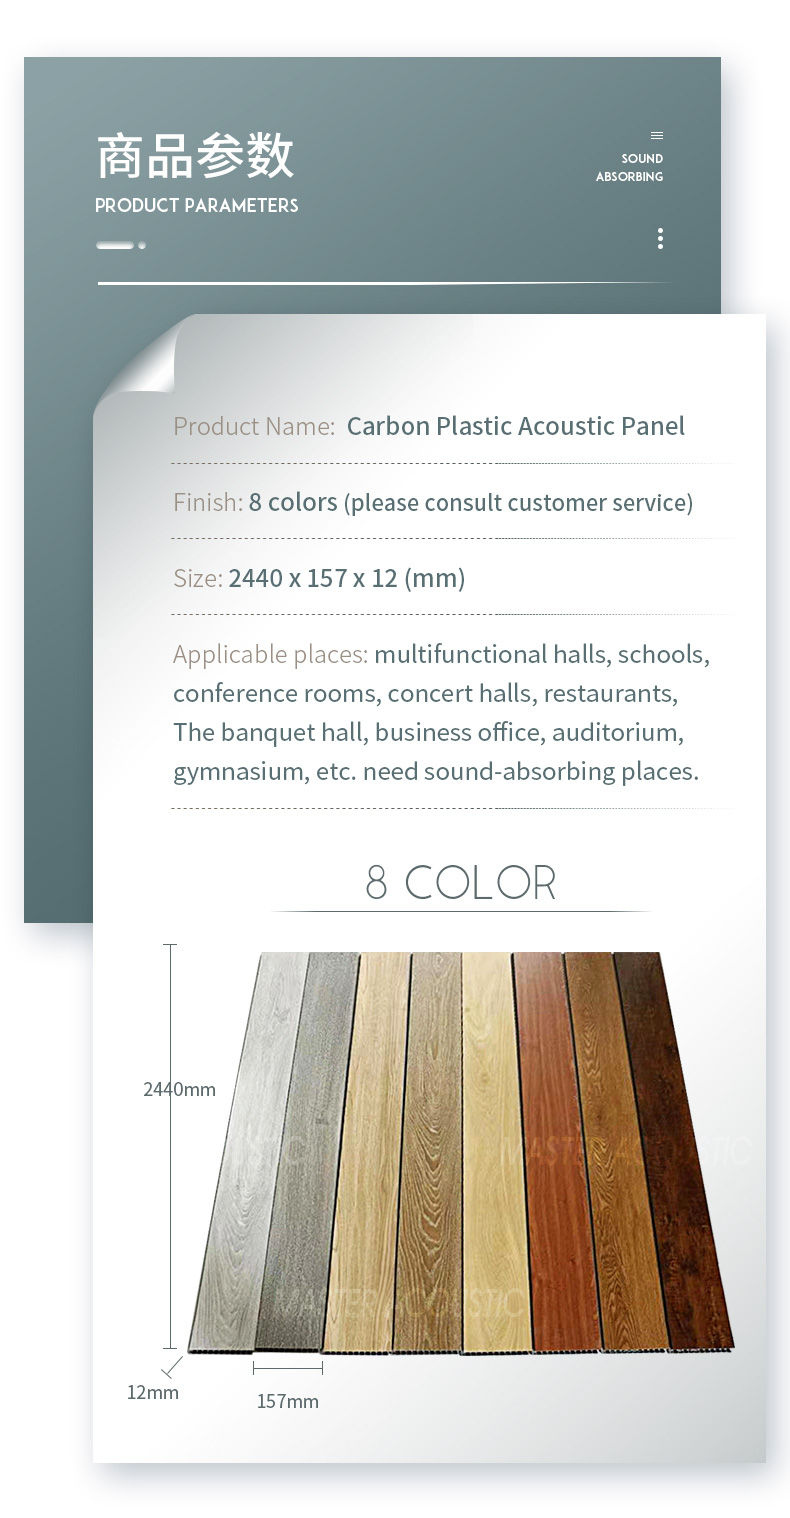 Carbon plastic acoustic panel parameter